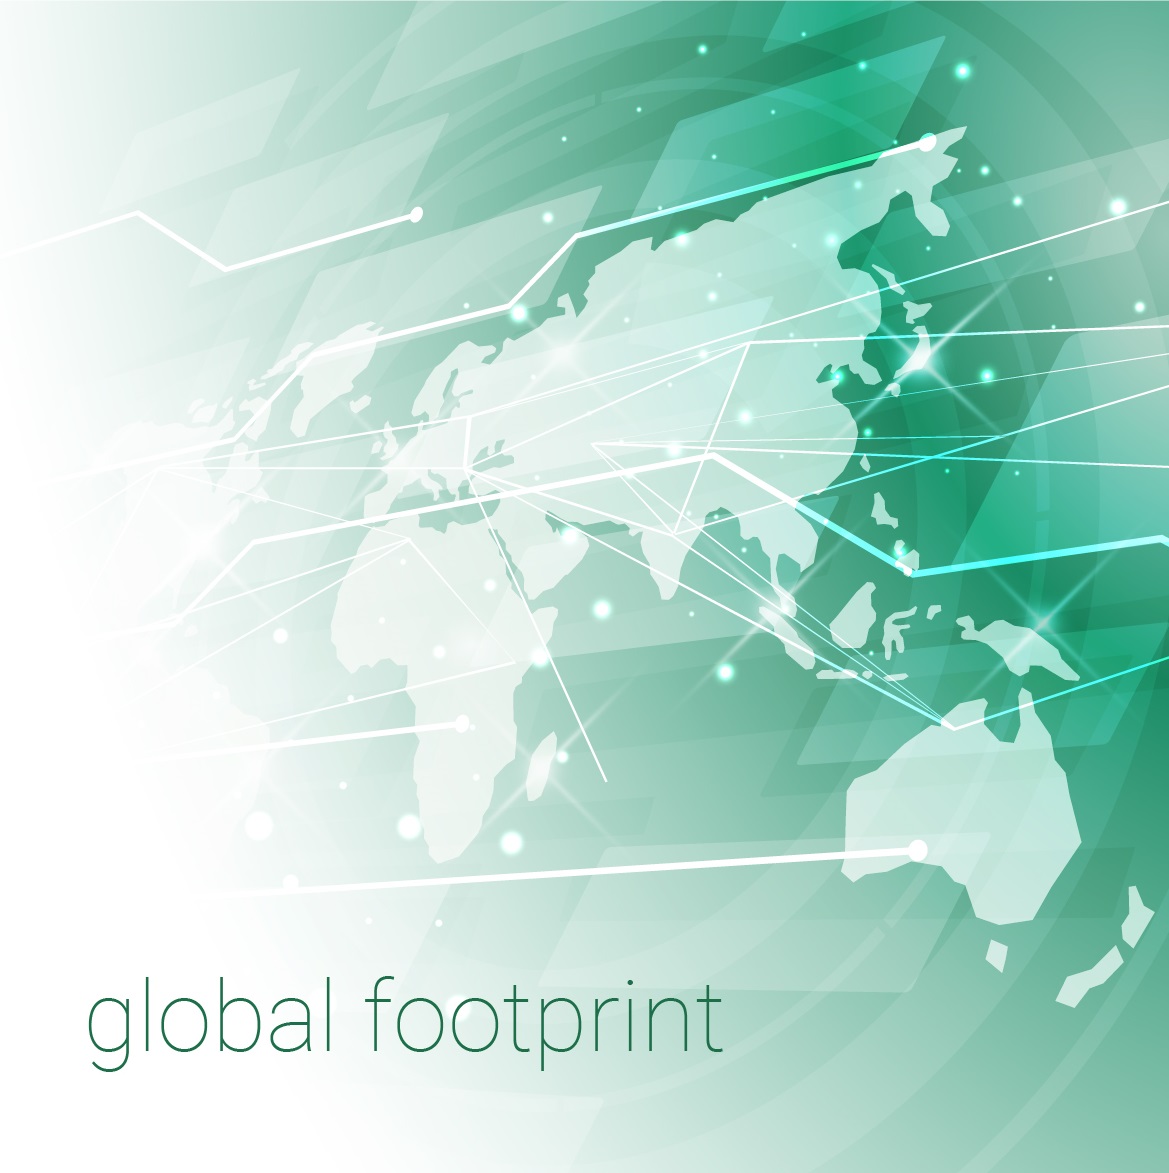 Index-6 global footprint